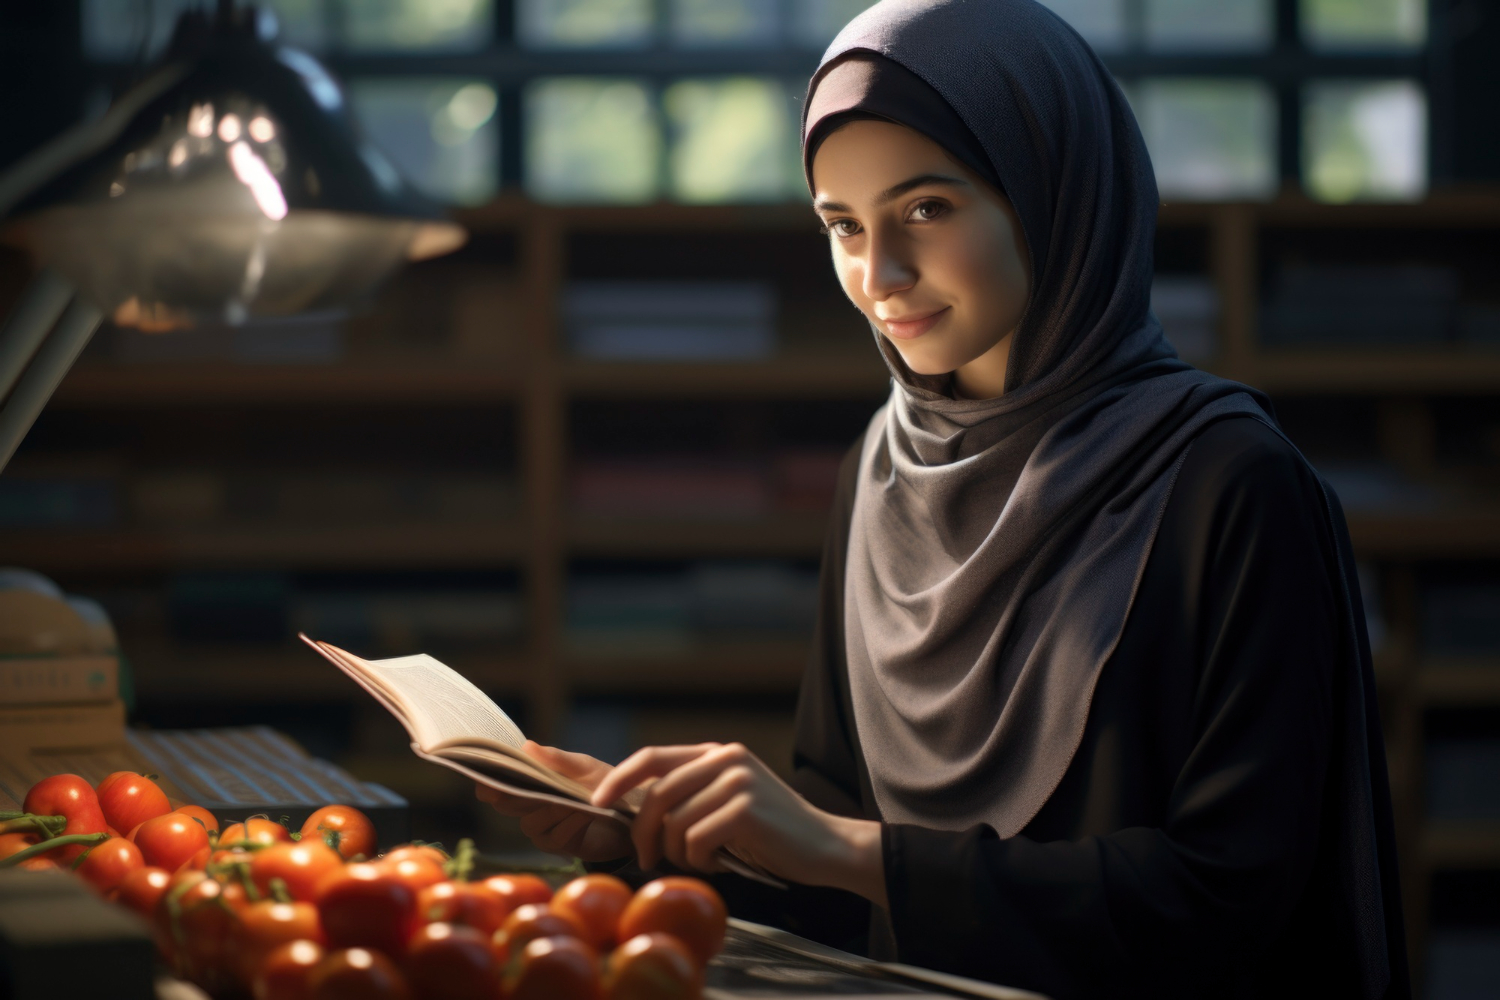 Makan Katak: Apakah Halal atau Haram? Jawaban dari Perspektif Agama